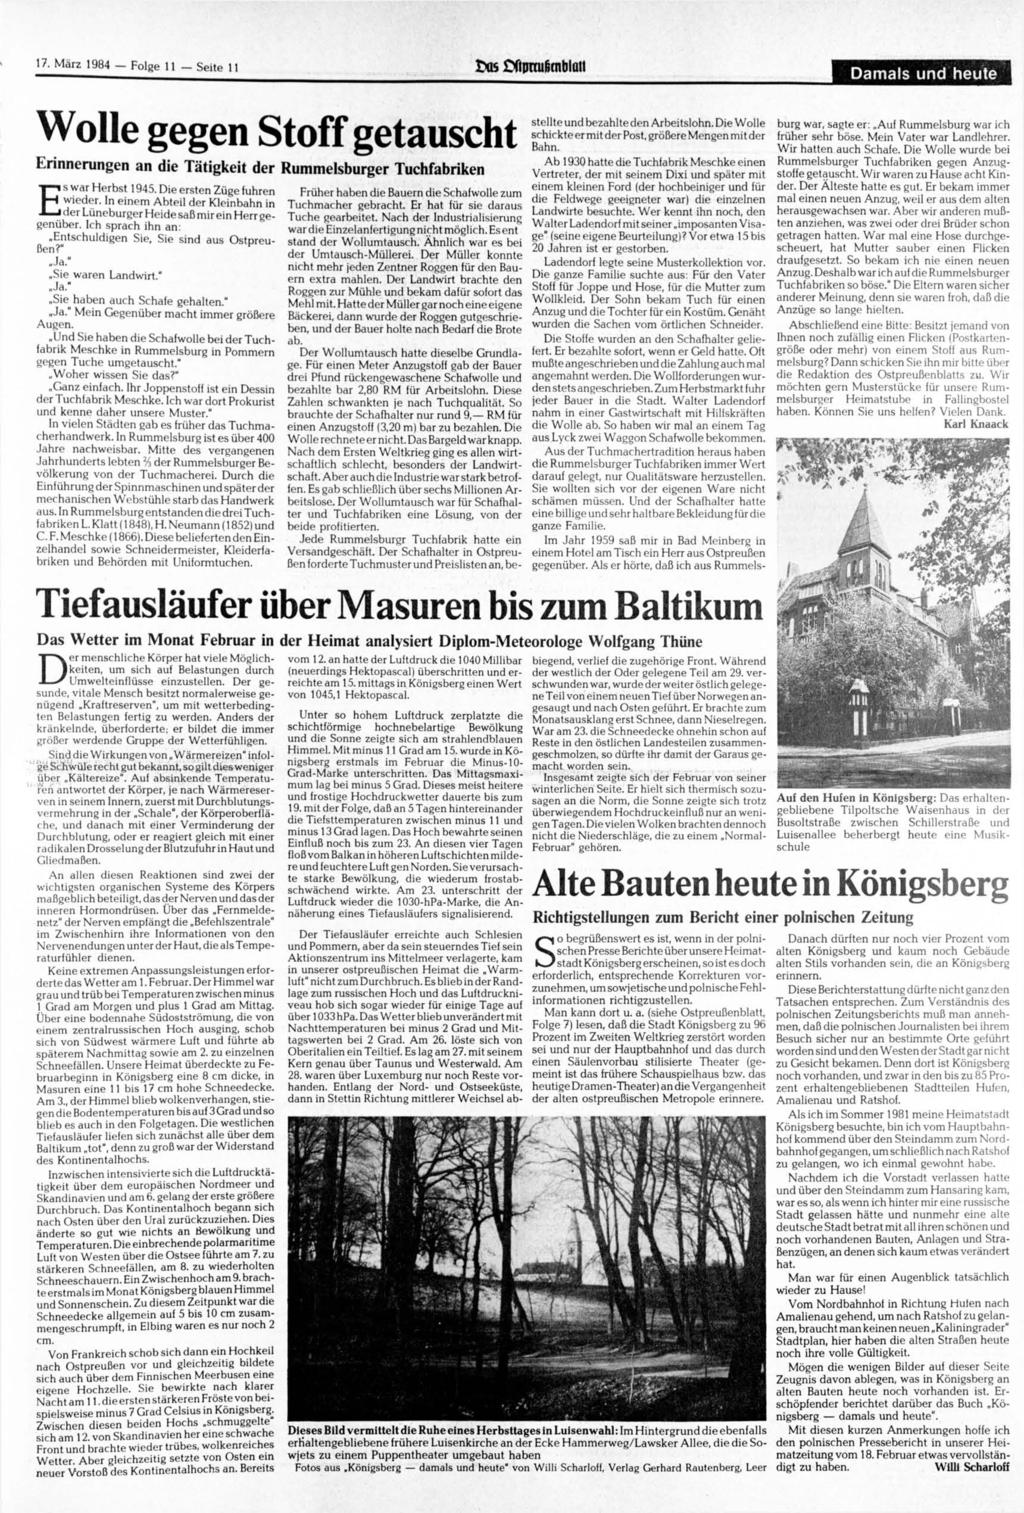 17. 1984 Folge 11 Seite 11 ims SXipnußrnbluii Damals und heute Wolle gegen Stoff getauscht Erinnerungen an die Tätigkeit der Rummelsburger Tuchfabriken Es war Herbst 1945.